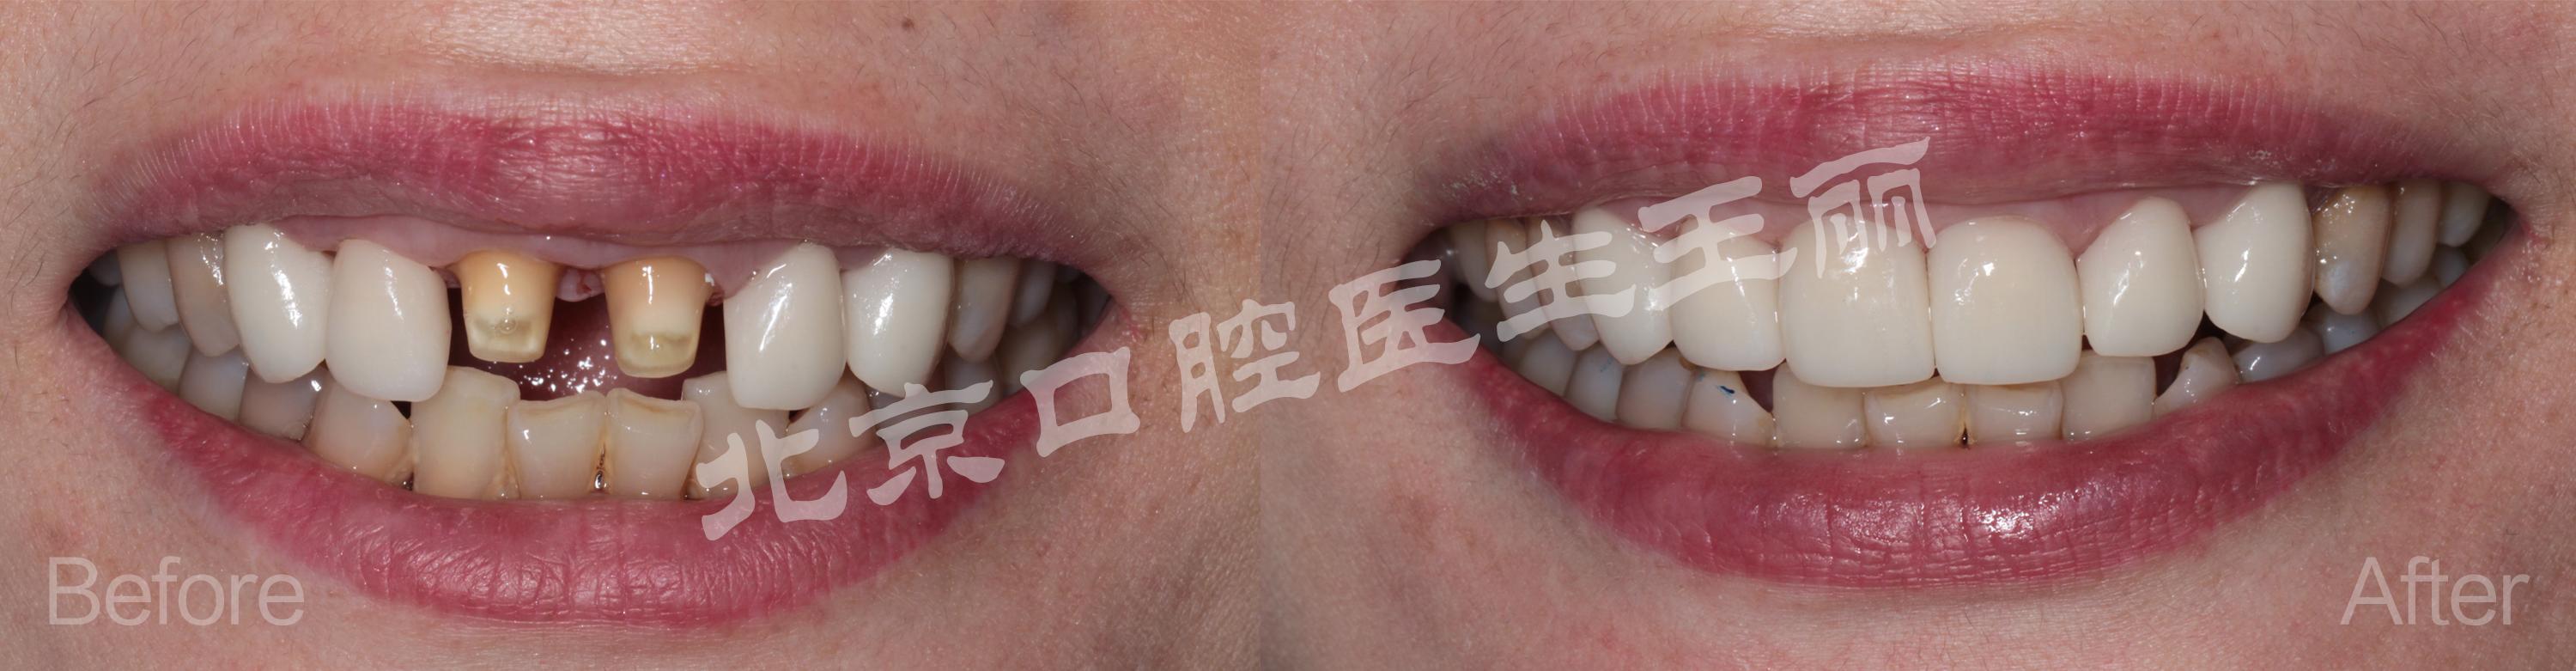 补牙&洗牙注意事项&价格…去过上海多家医院经验分享 - 知乎